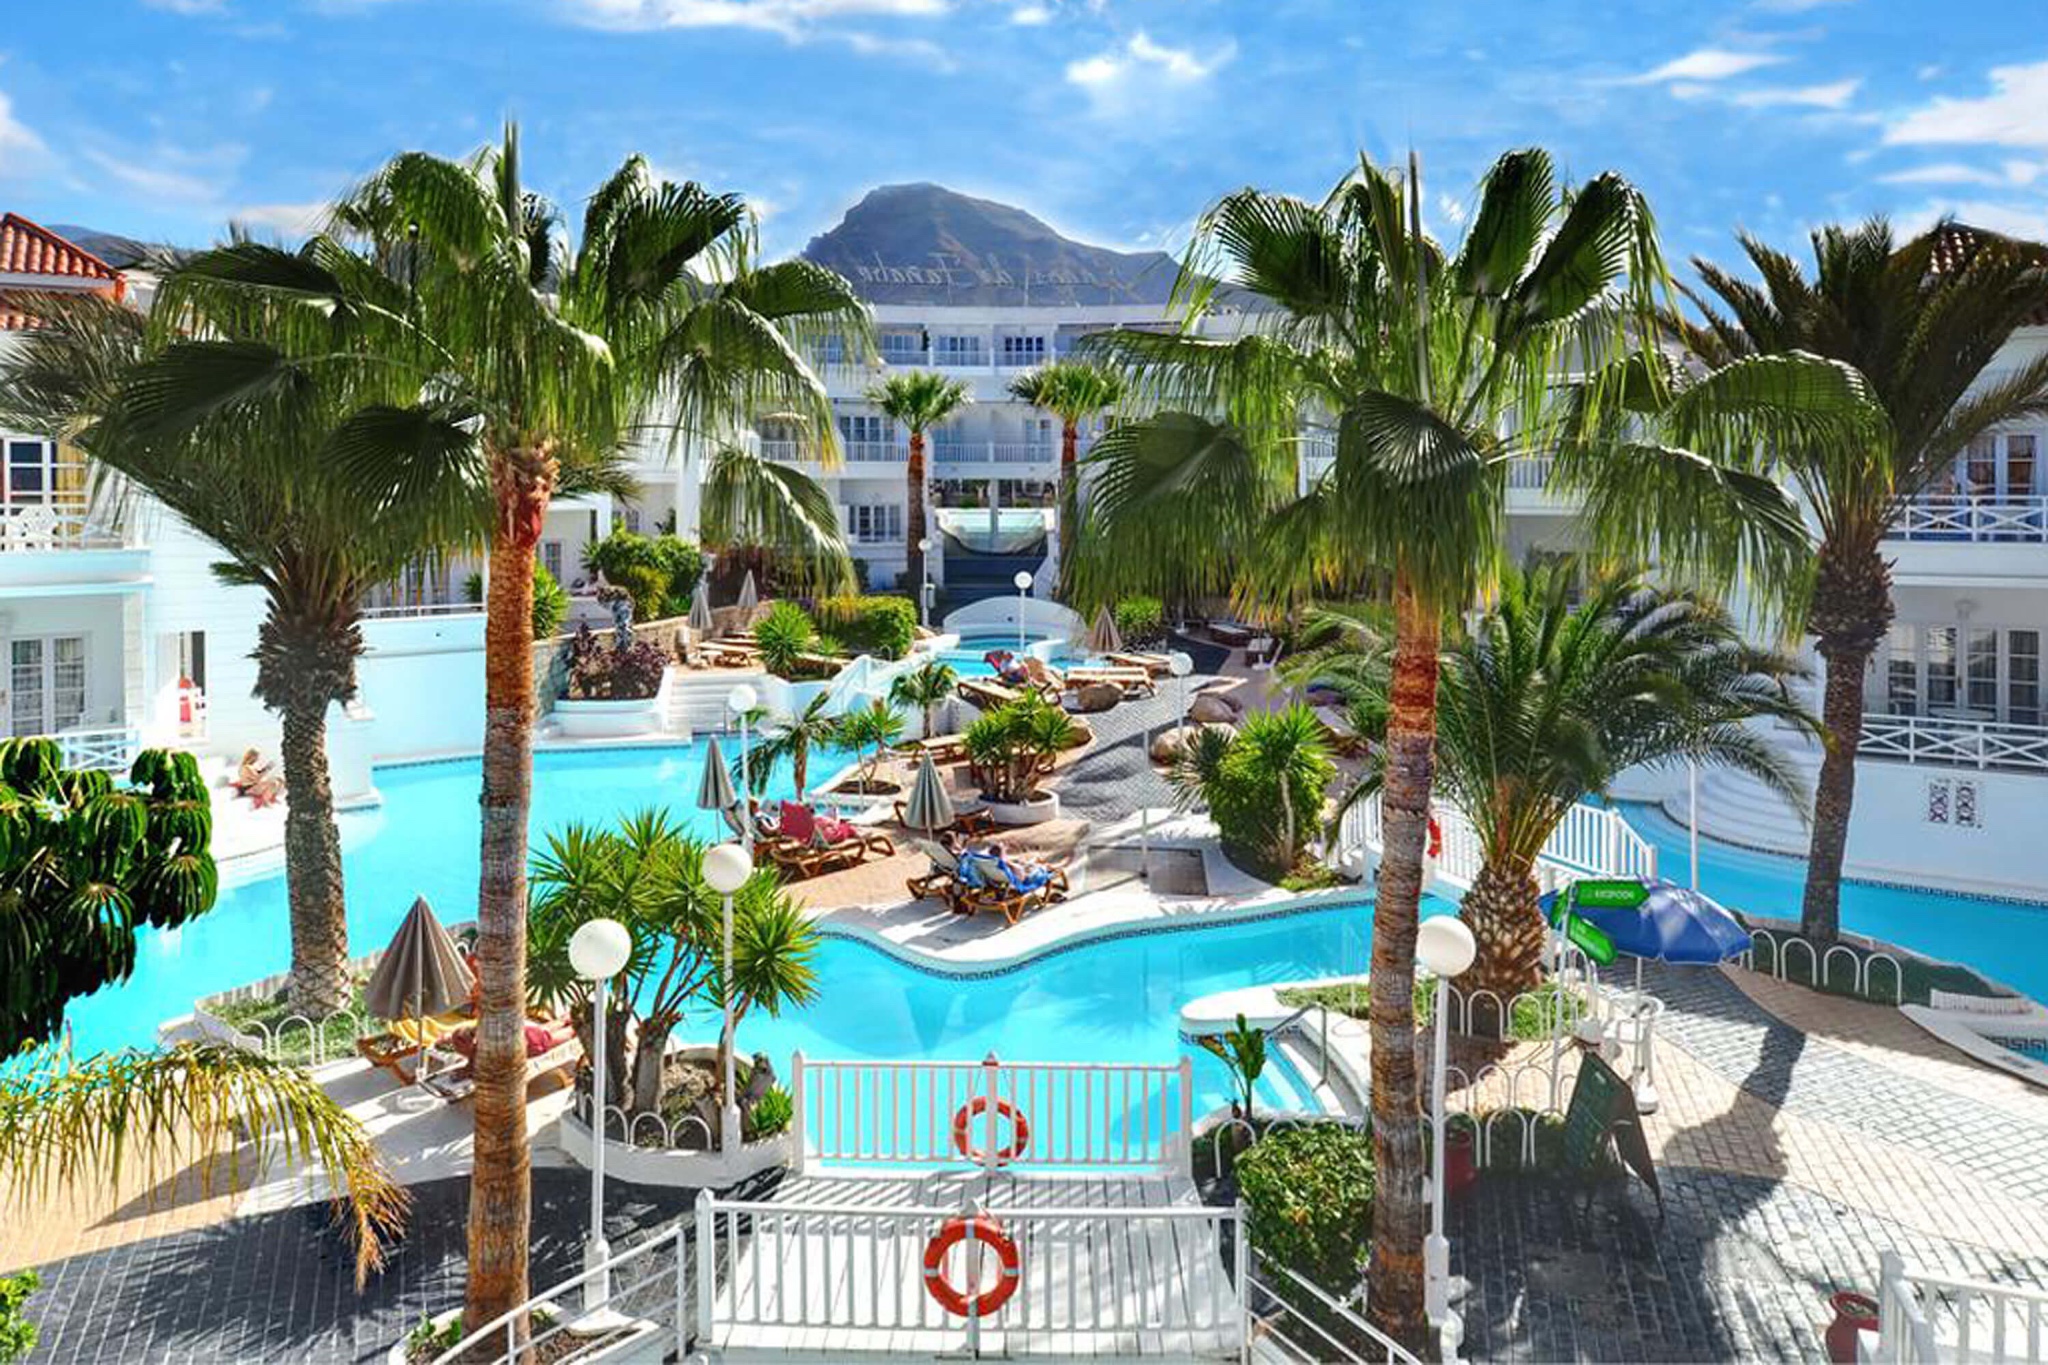 Appartement de vacances situé dans un complexe tropical avec piscine communautaire et à quelques minutes seulement de la plage